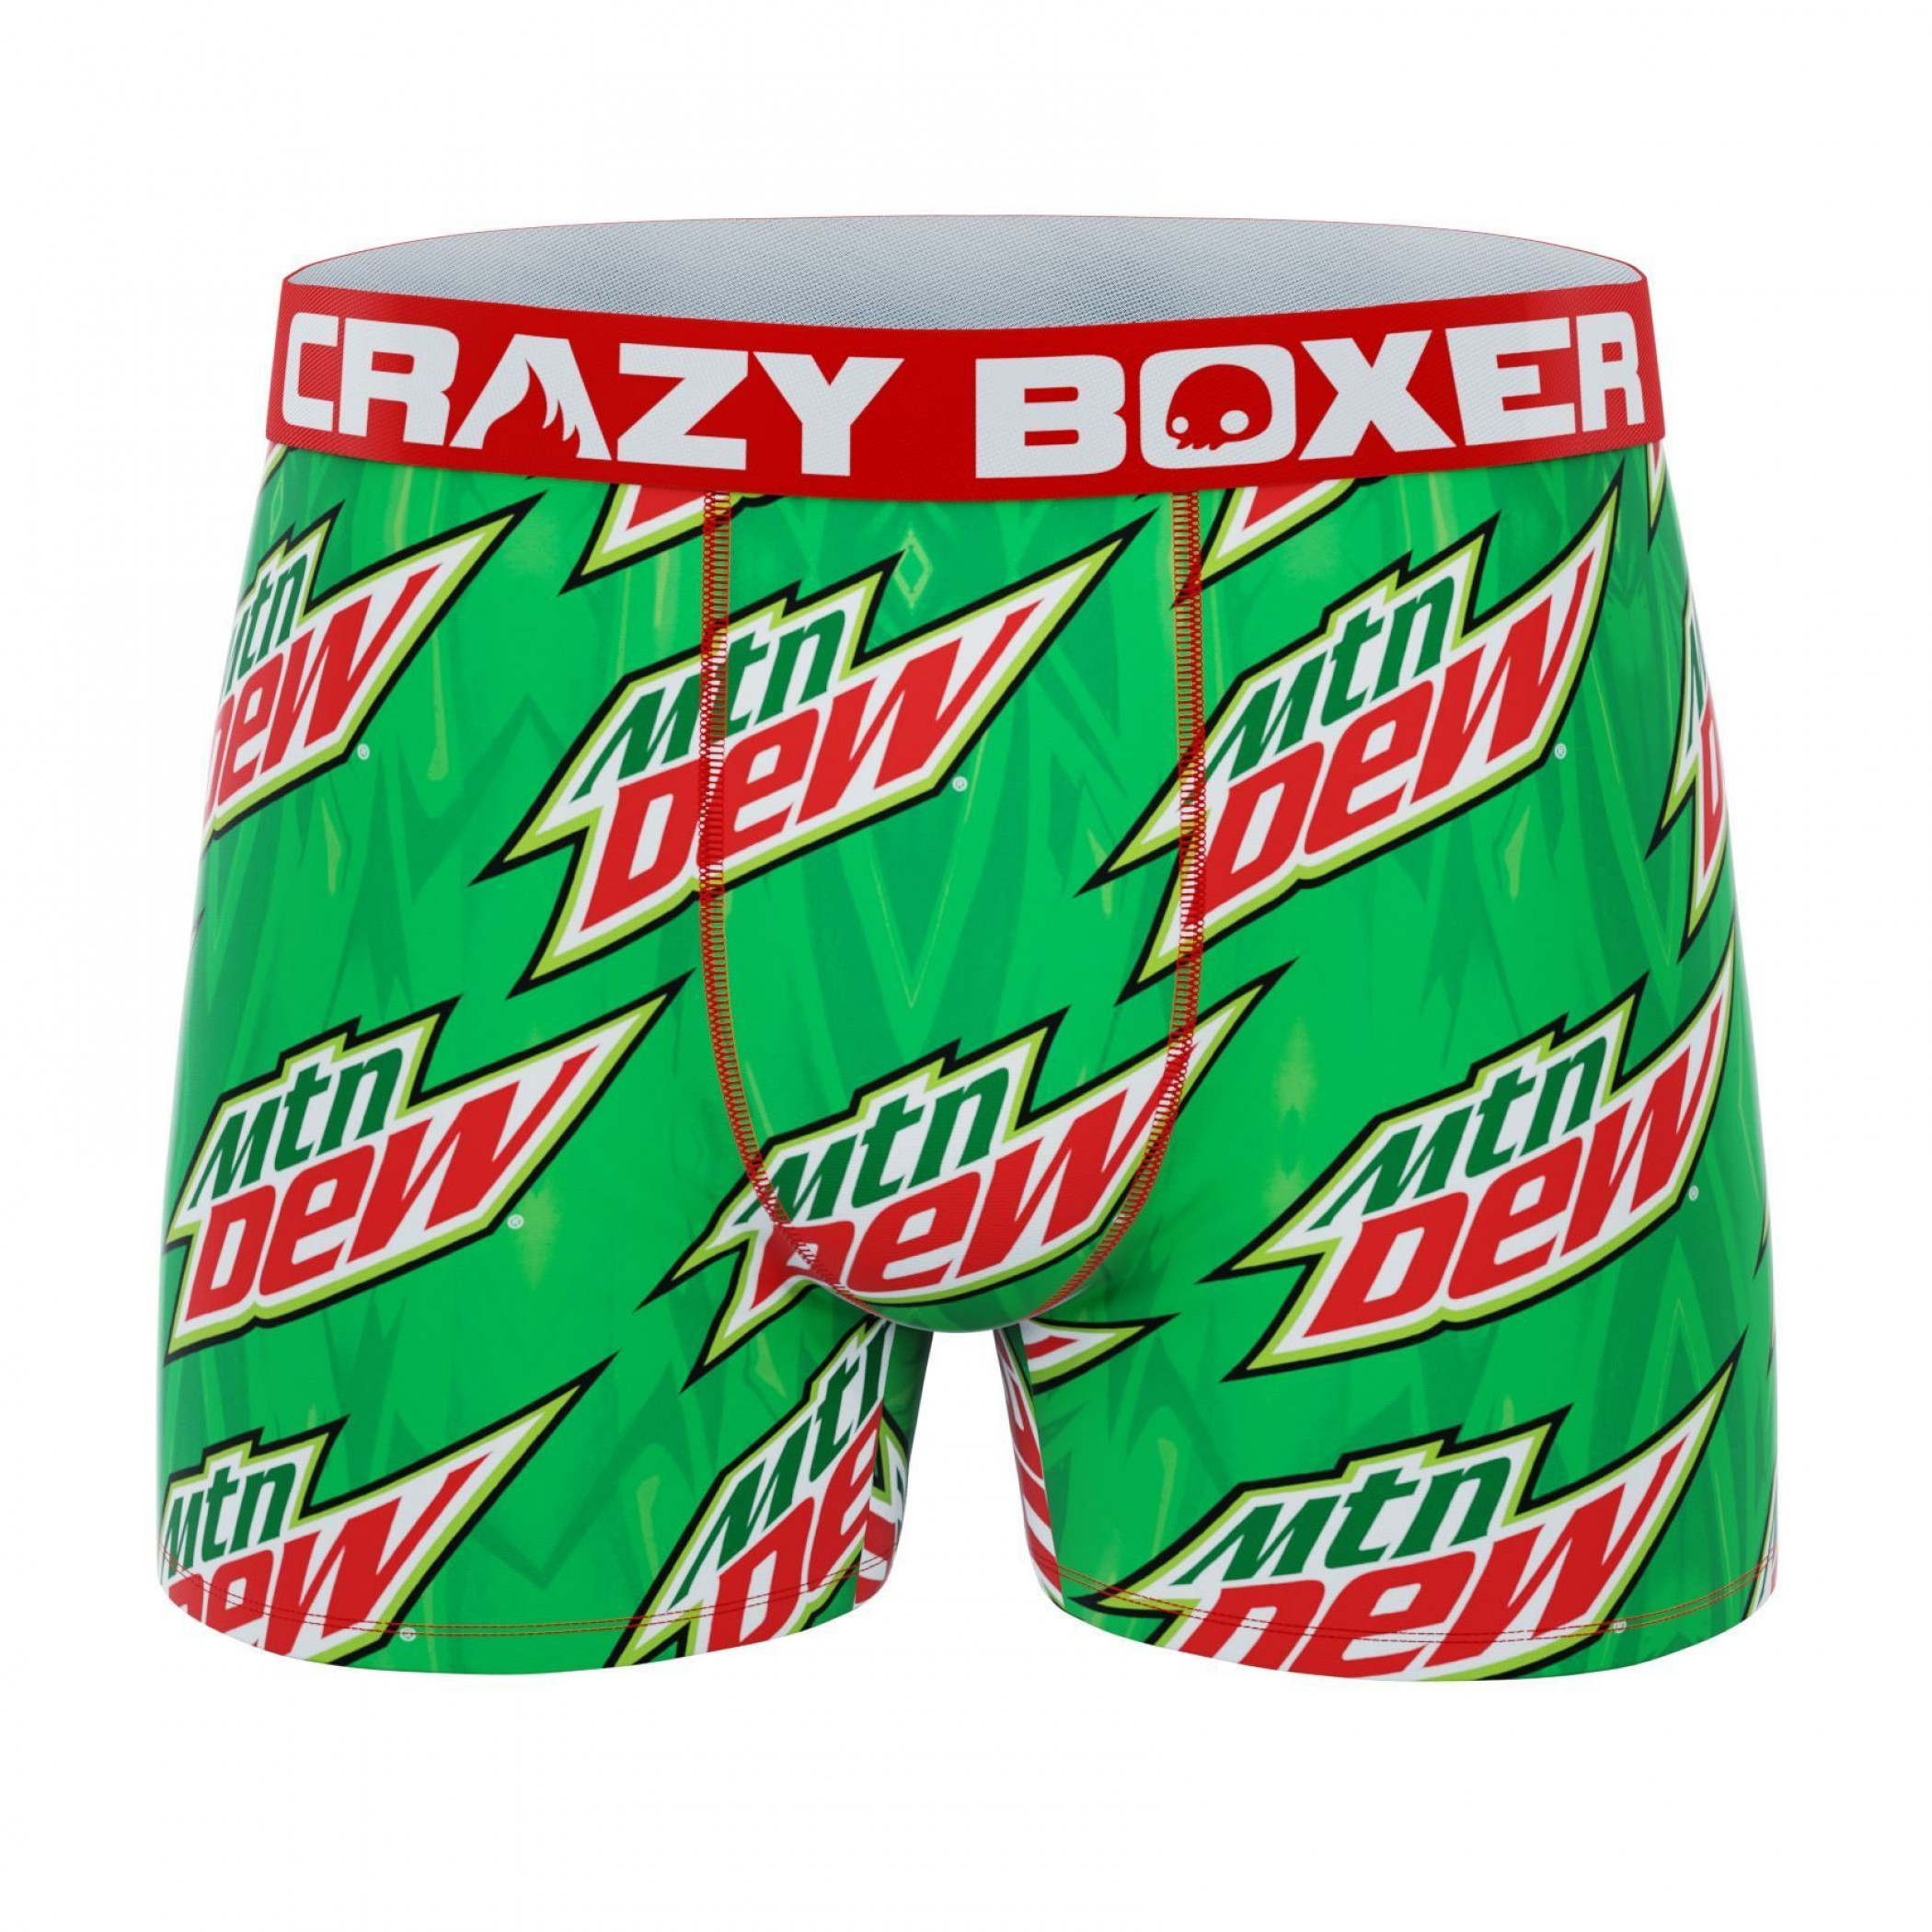 Crazy Boxer Mountain Dew Print Men's Boxer Briefs 2-Pack